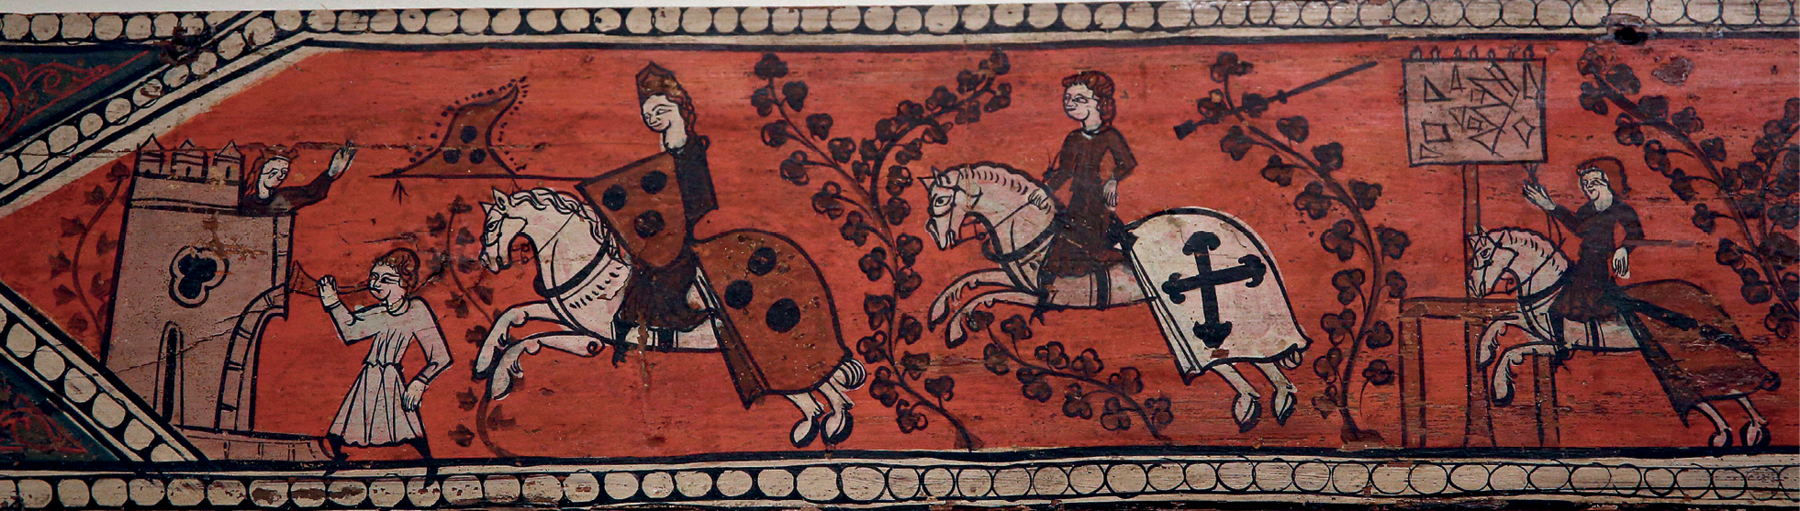 Pintura. Representação de homens vestindo armaduras sobre o dorso de cavalos. Portam escudos, lanças e bandeiras. À esquerda, uma torre de castelo.